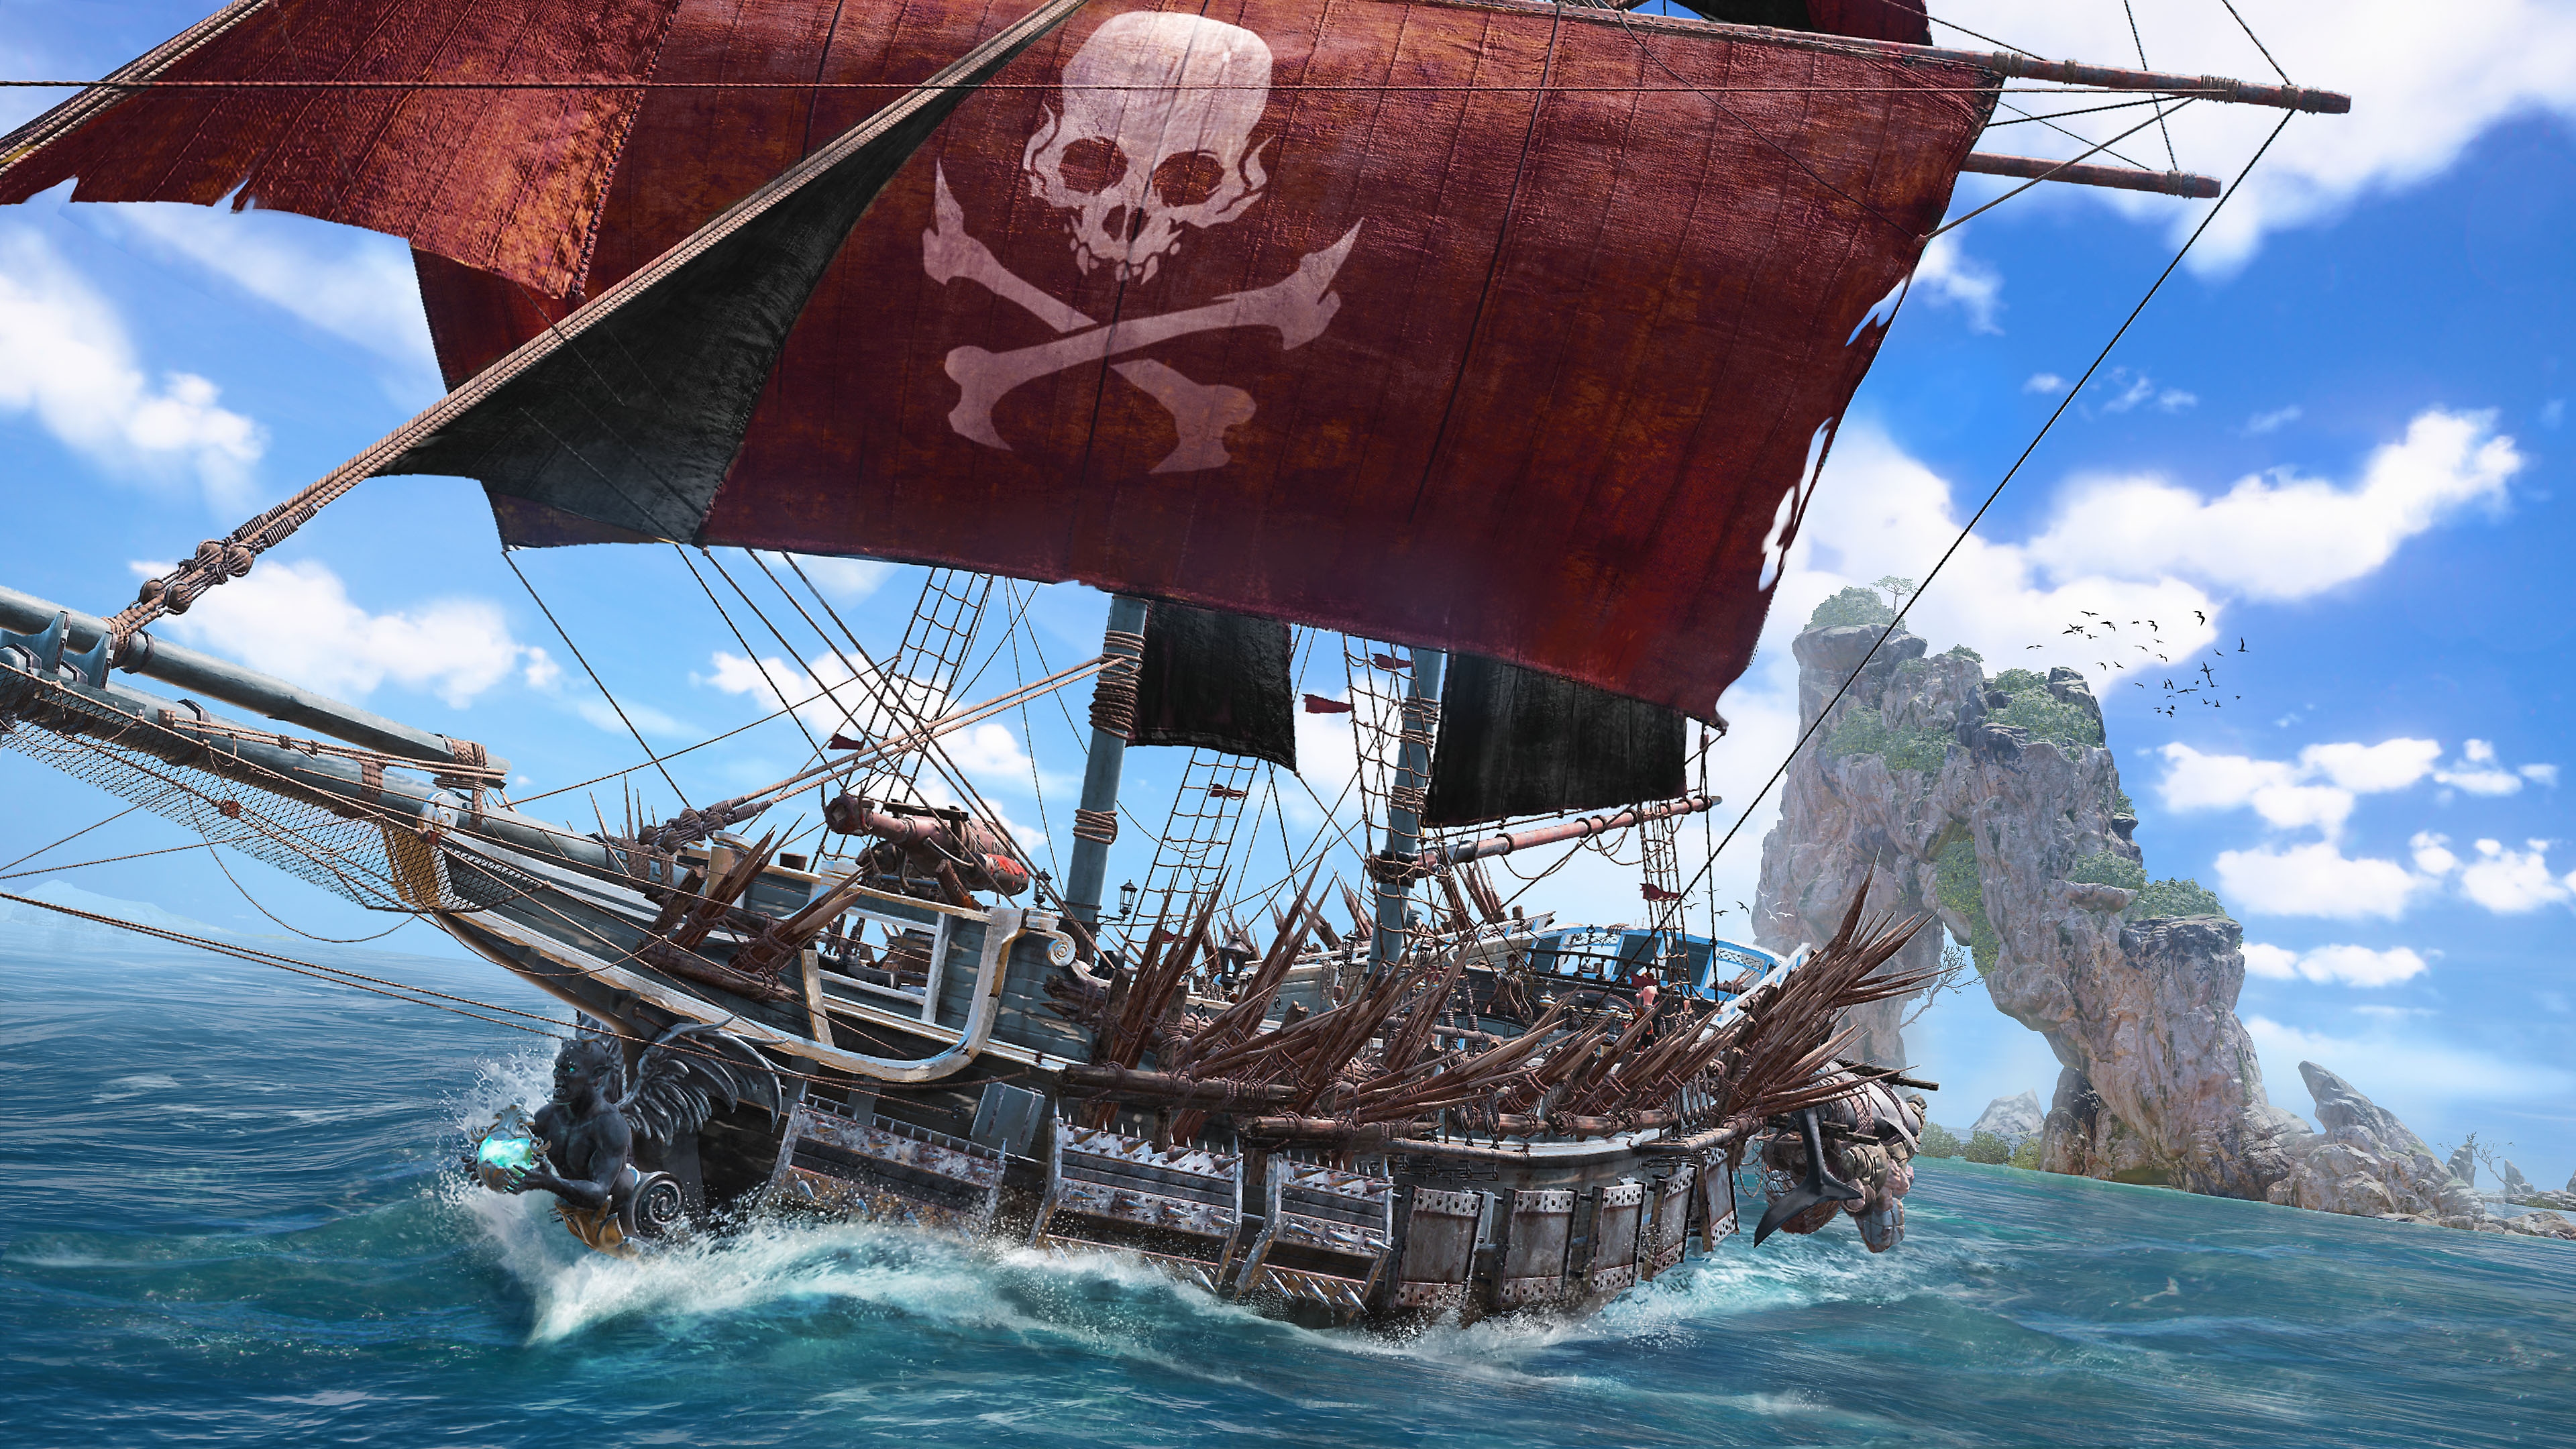 Skull & Bones-screenshot van een piratenschip met een rood grootzeil waarop een schedel en botten staan